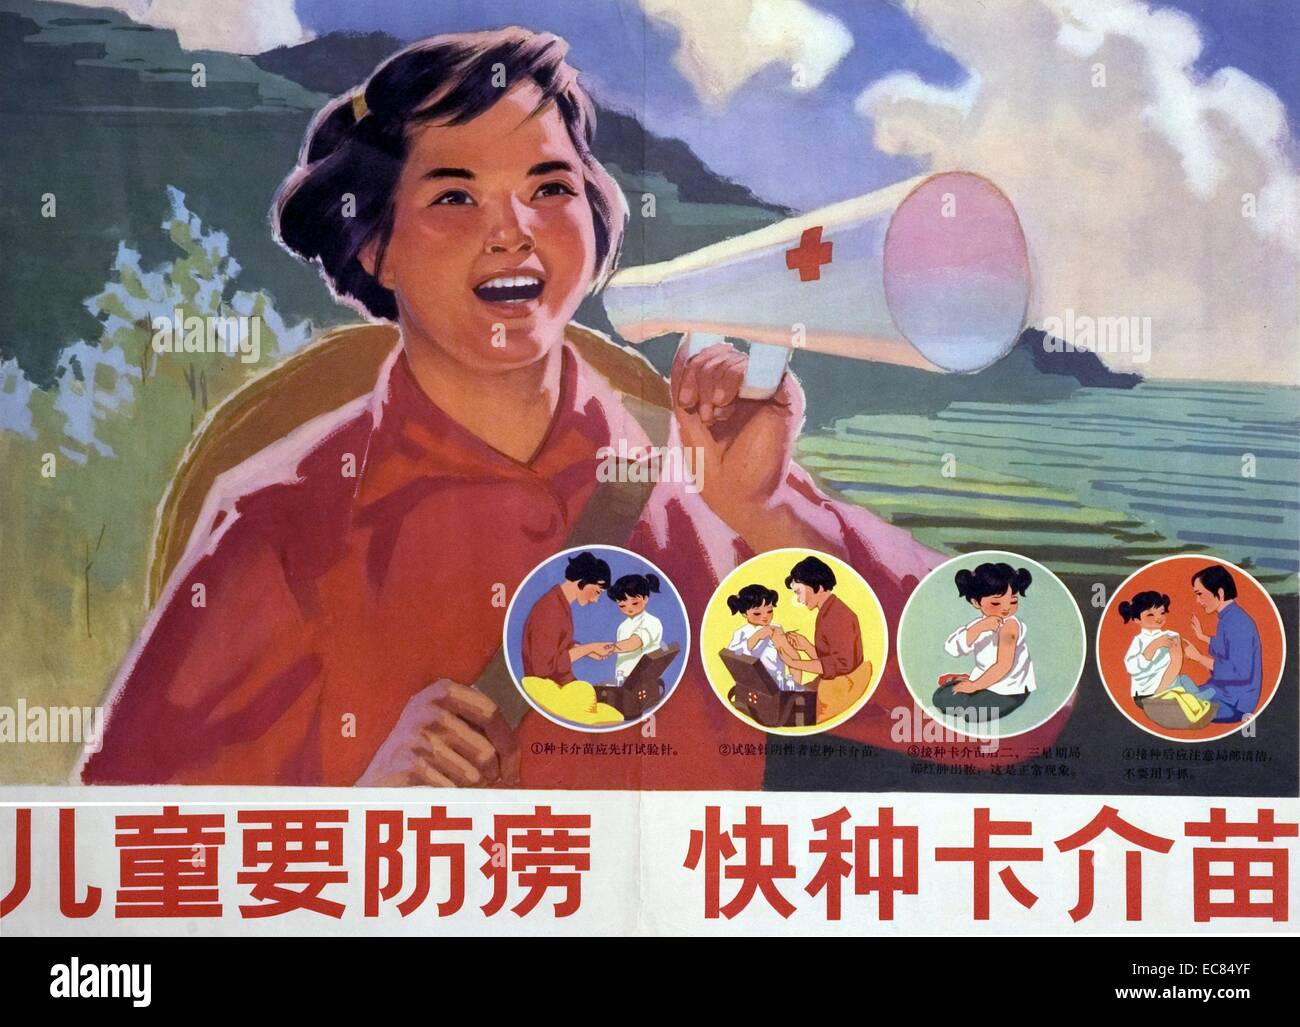 Poster chinois montre une figure féminine à l'aide d'un haut-parleur pour faire prendre conscience de la tuberculose, elle encourage les parents et les enfants à visiter leur médecin pour recevoir le vaccin BCG (utilisées pour combattre la tuberculose). Du c1920 Banque D'Images